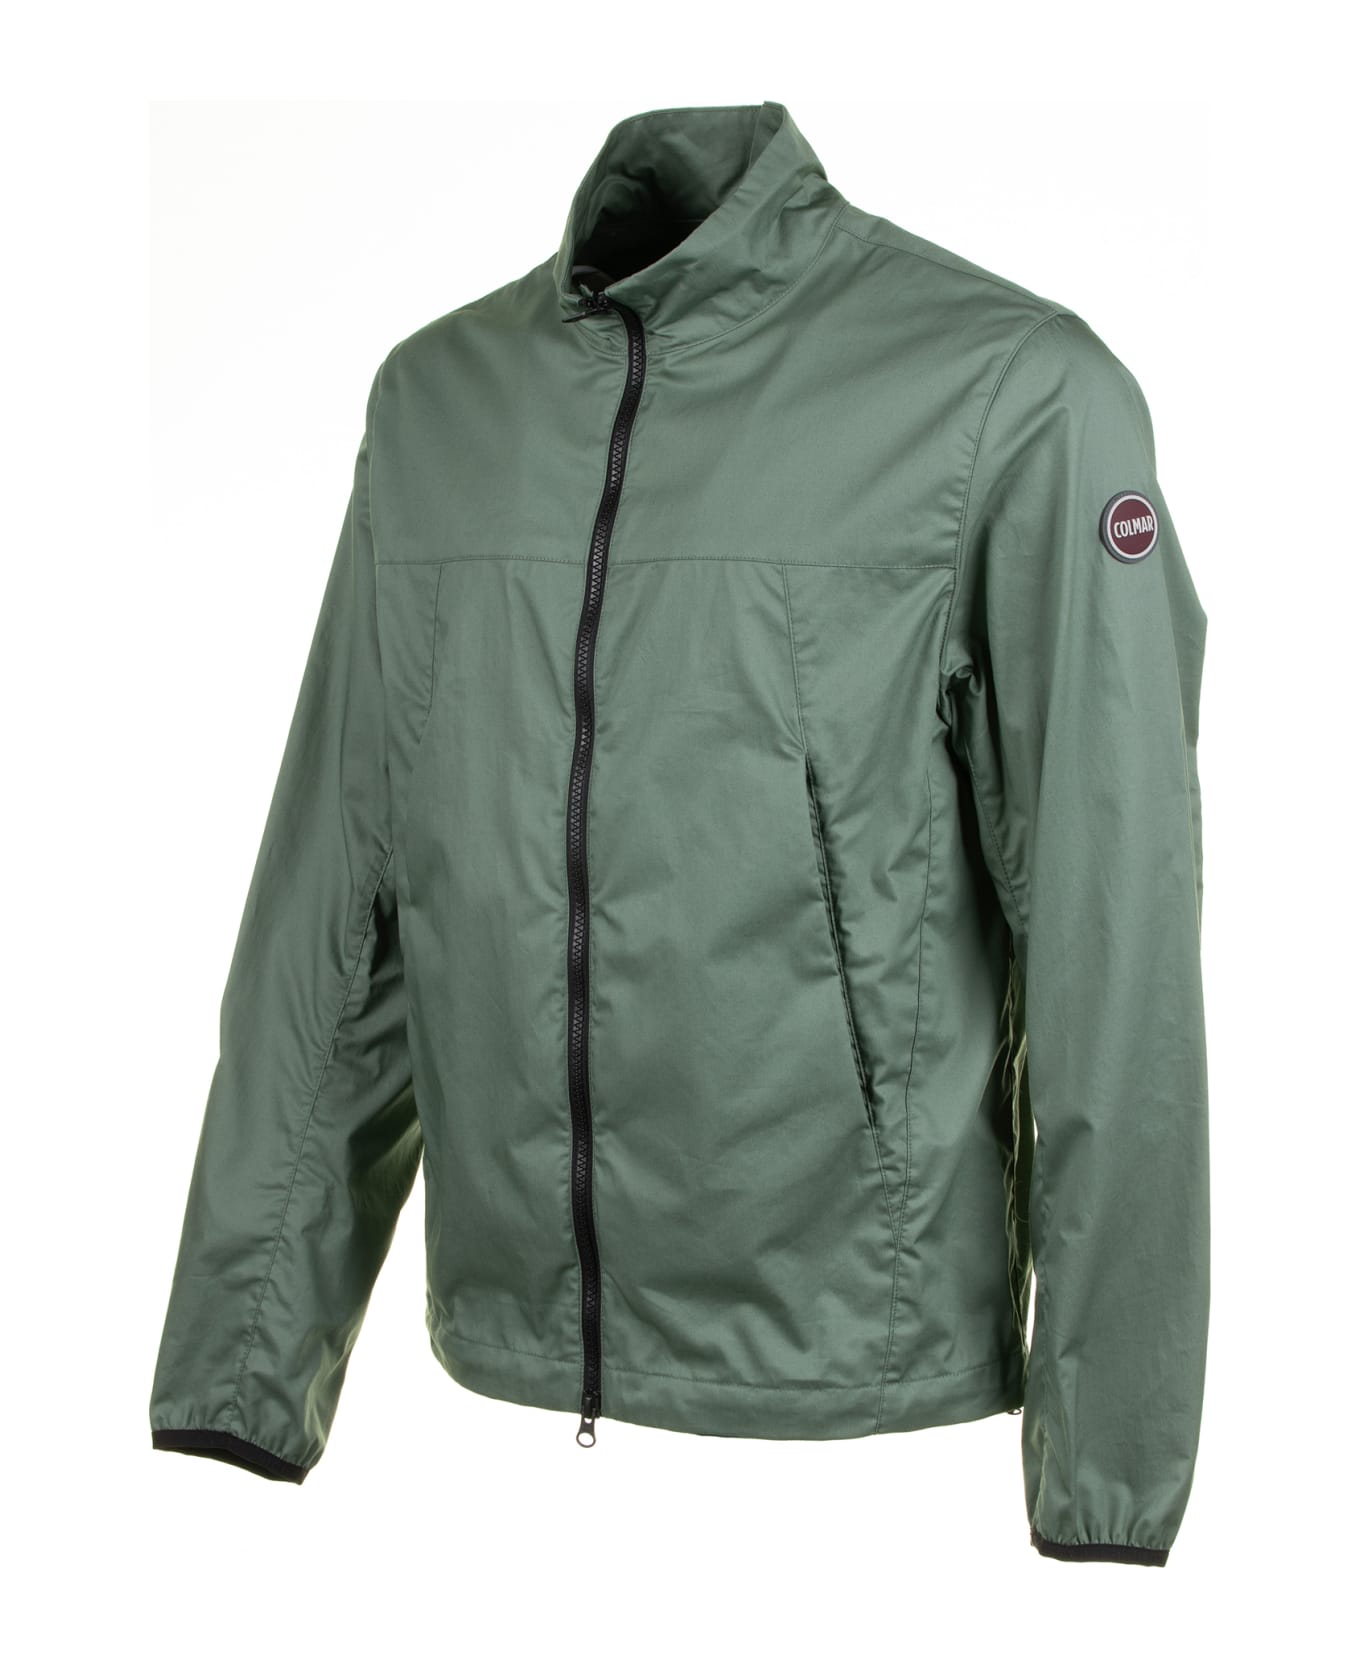 Colmar Green Cotton Twill Jacket - VERDE